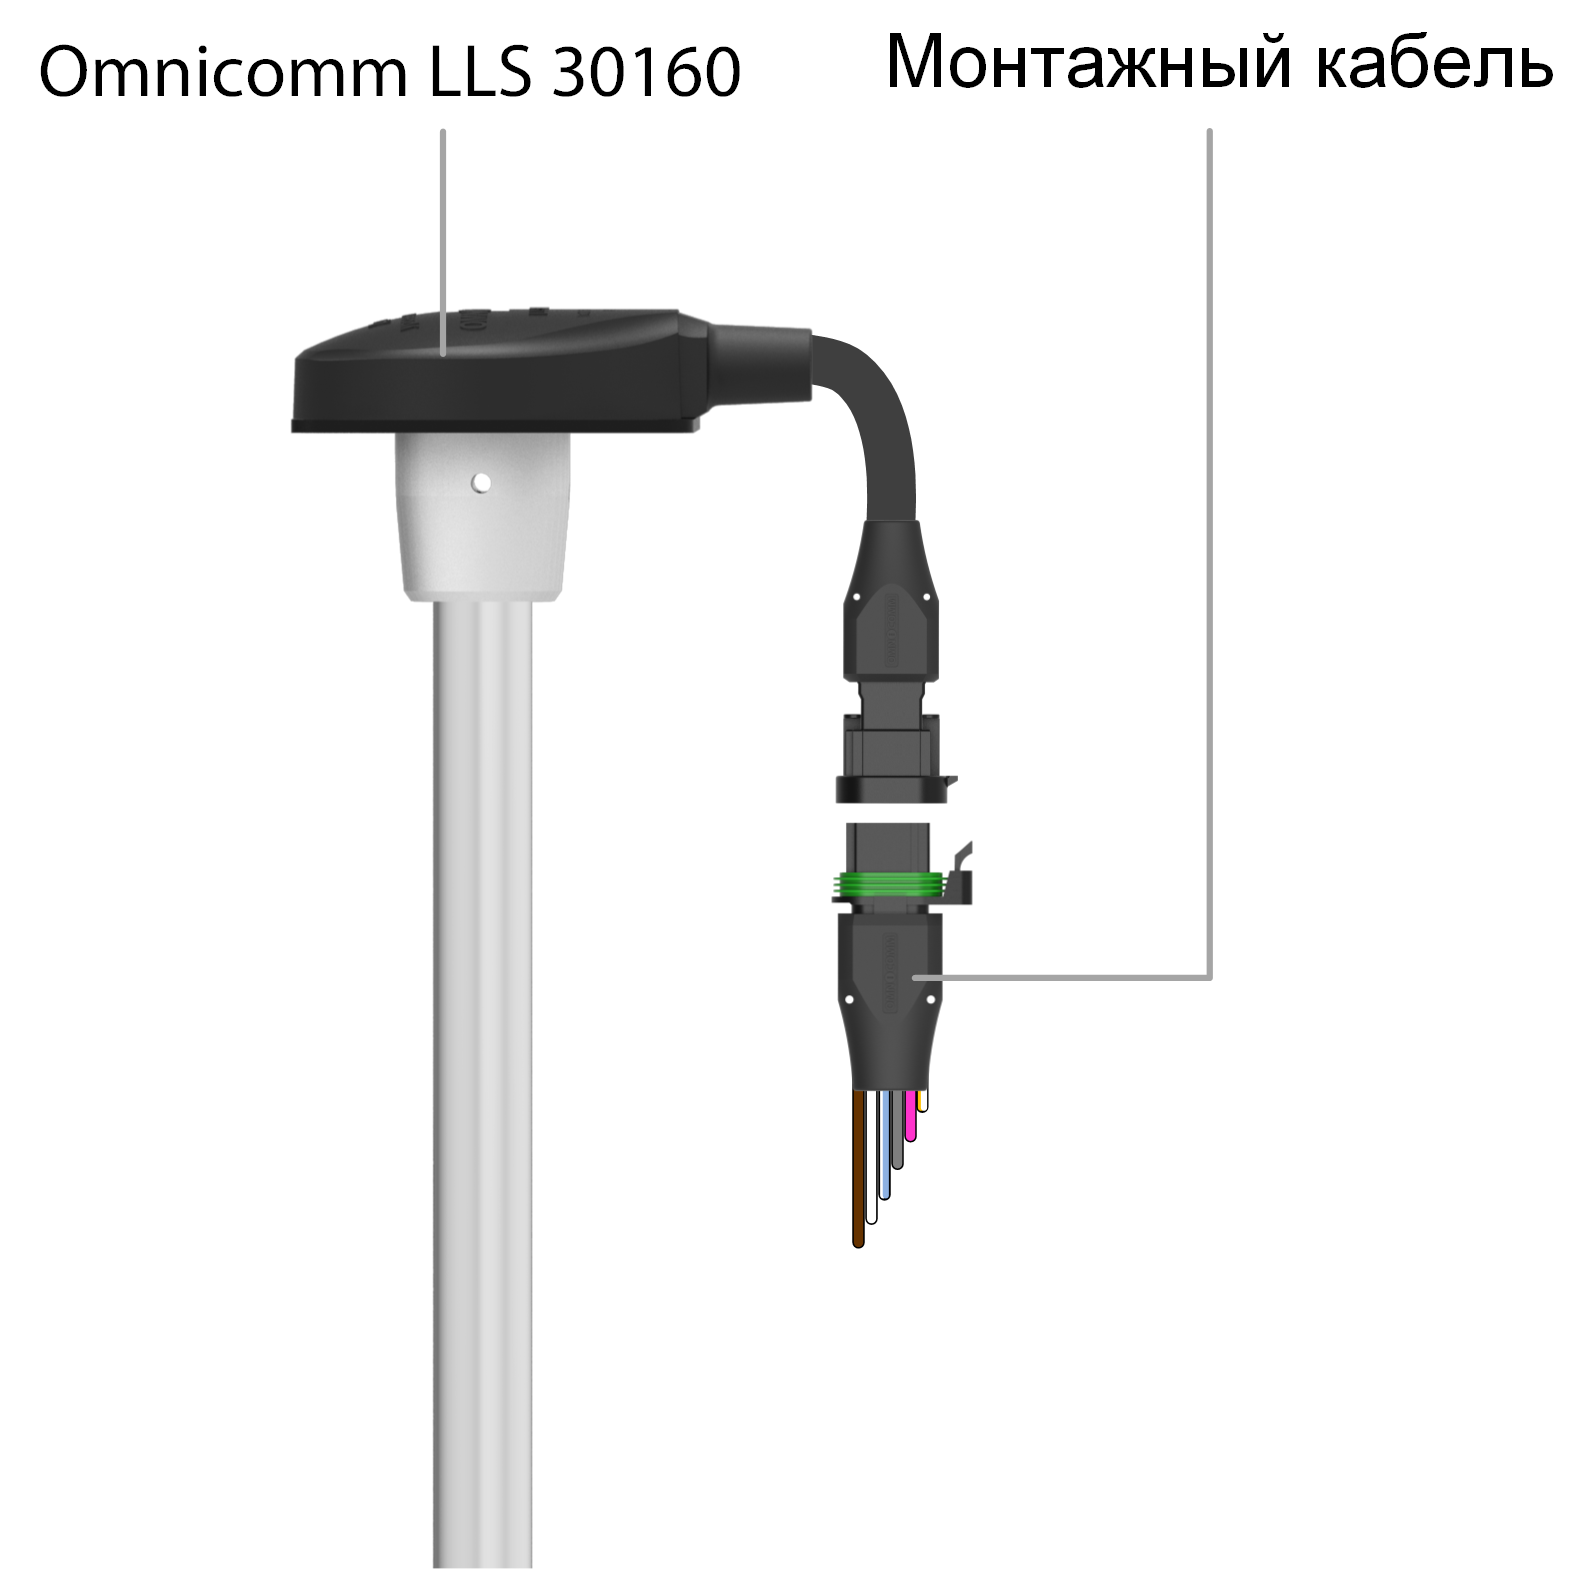 Подключение датчика Omnicomm LLS 30160 